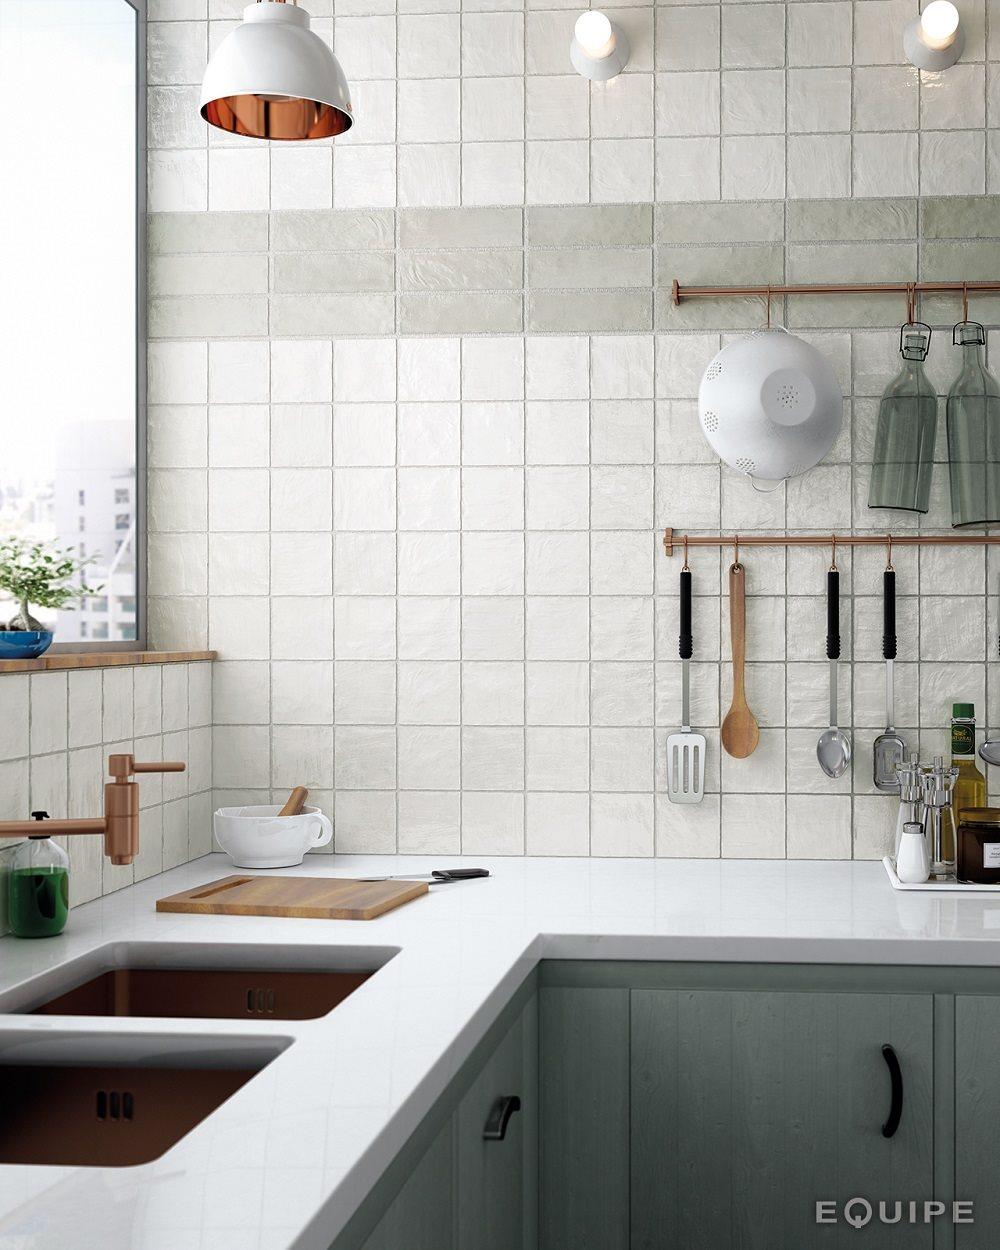 Zellige blanc brillant 10x10 cm dans une cuisine aux meubles gris et plans de travail blancs accueillant accessoires de cuisine et évier